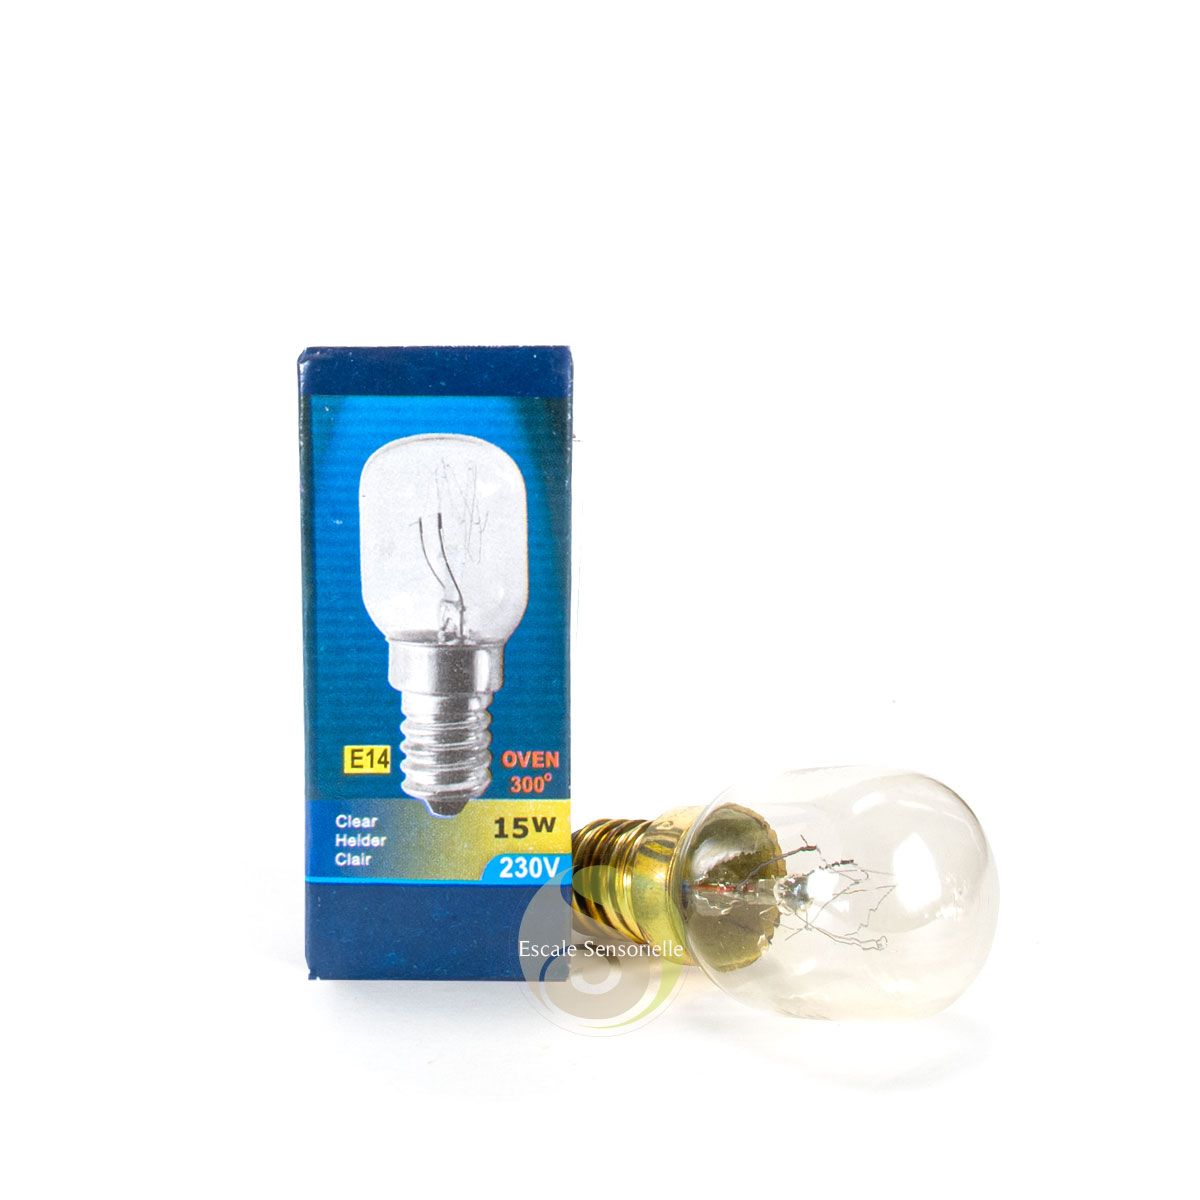 Ampoules de lampe au sel 15w E14 (paquet de 4) pour <300c Four